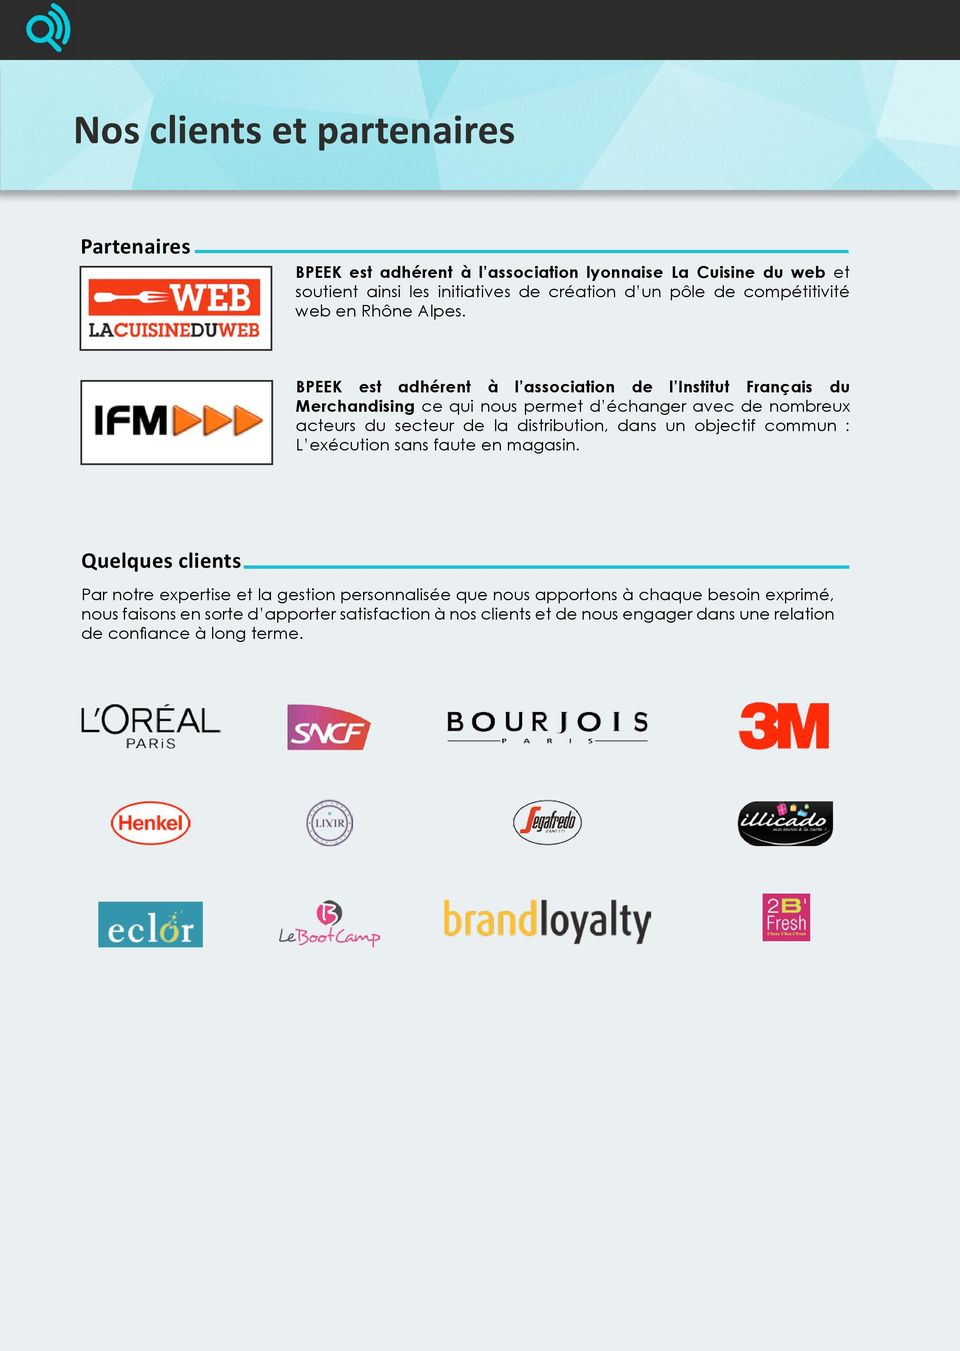 BPEEK est adhérent à l association de l Institut Français du Merchandising ce qui nous permet d échanger avec de nombreux acteurs du secteur de la distribution,